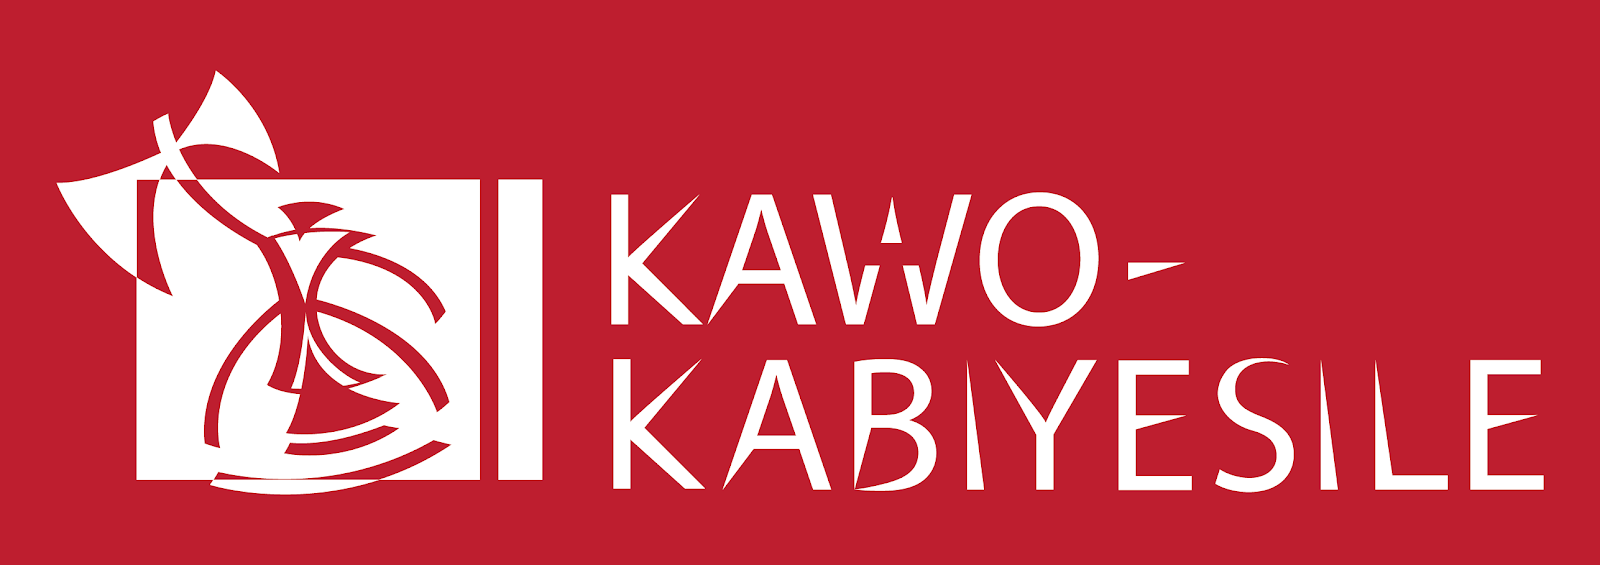 Kawo Kabiyesile